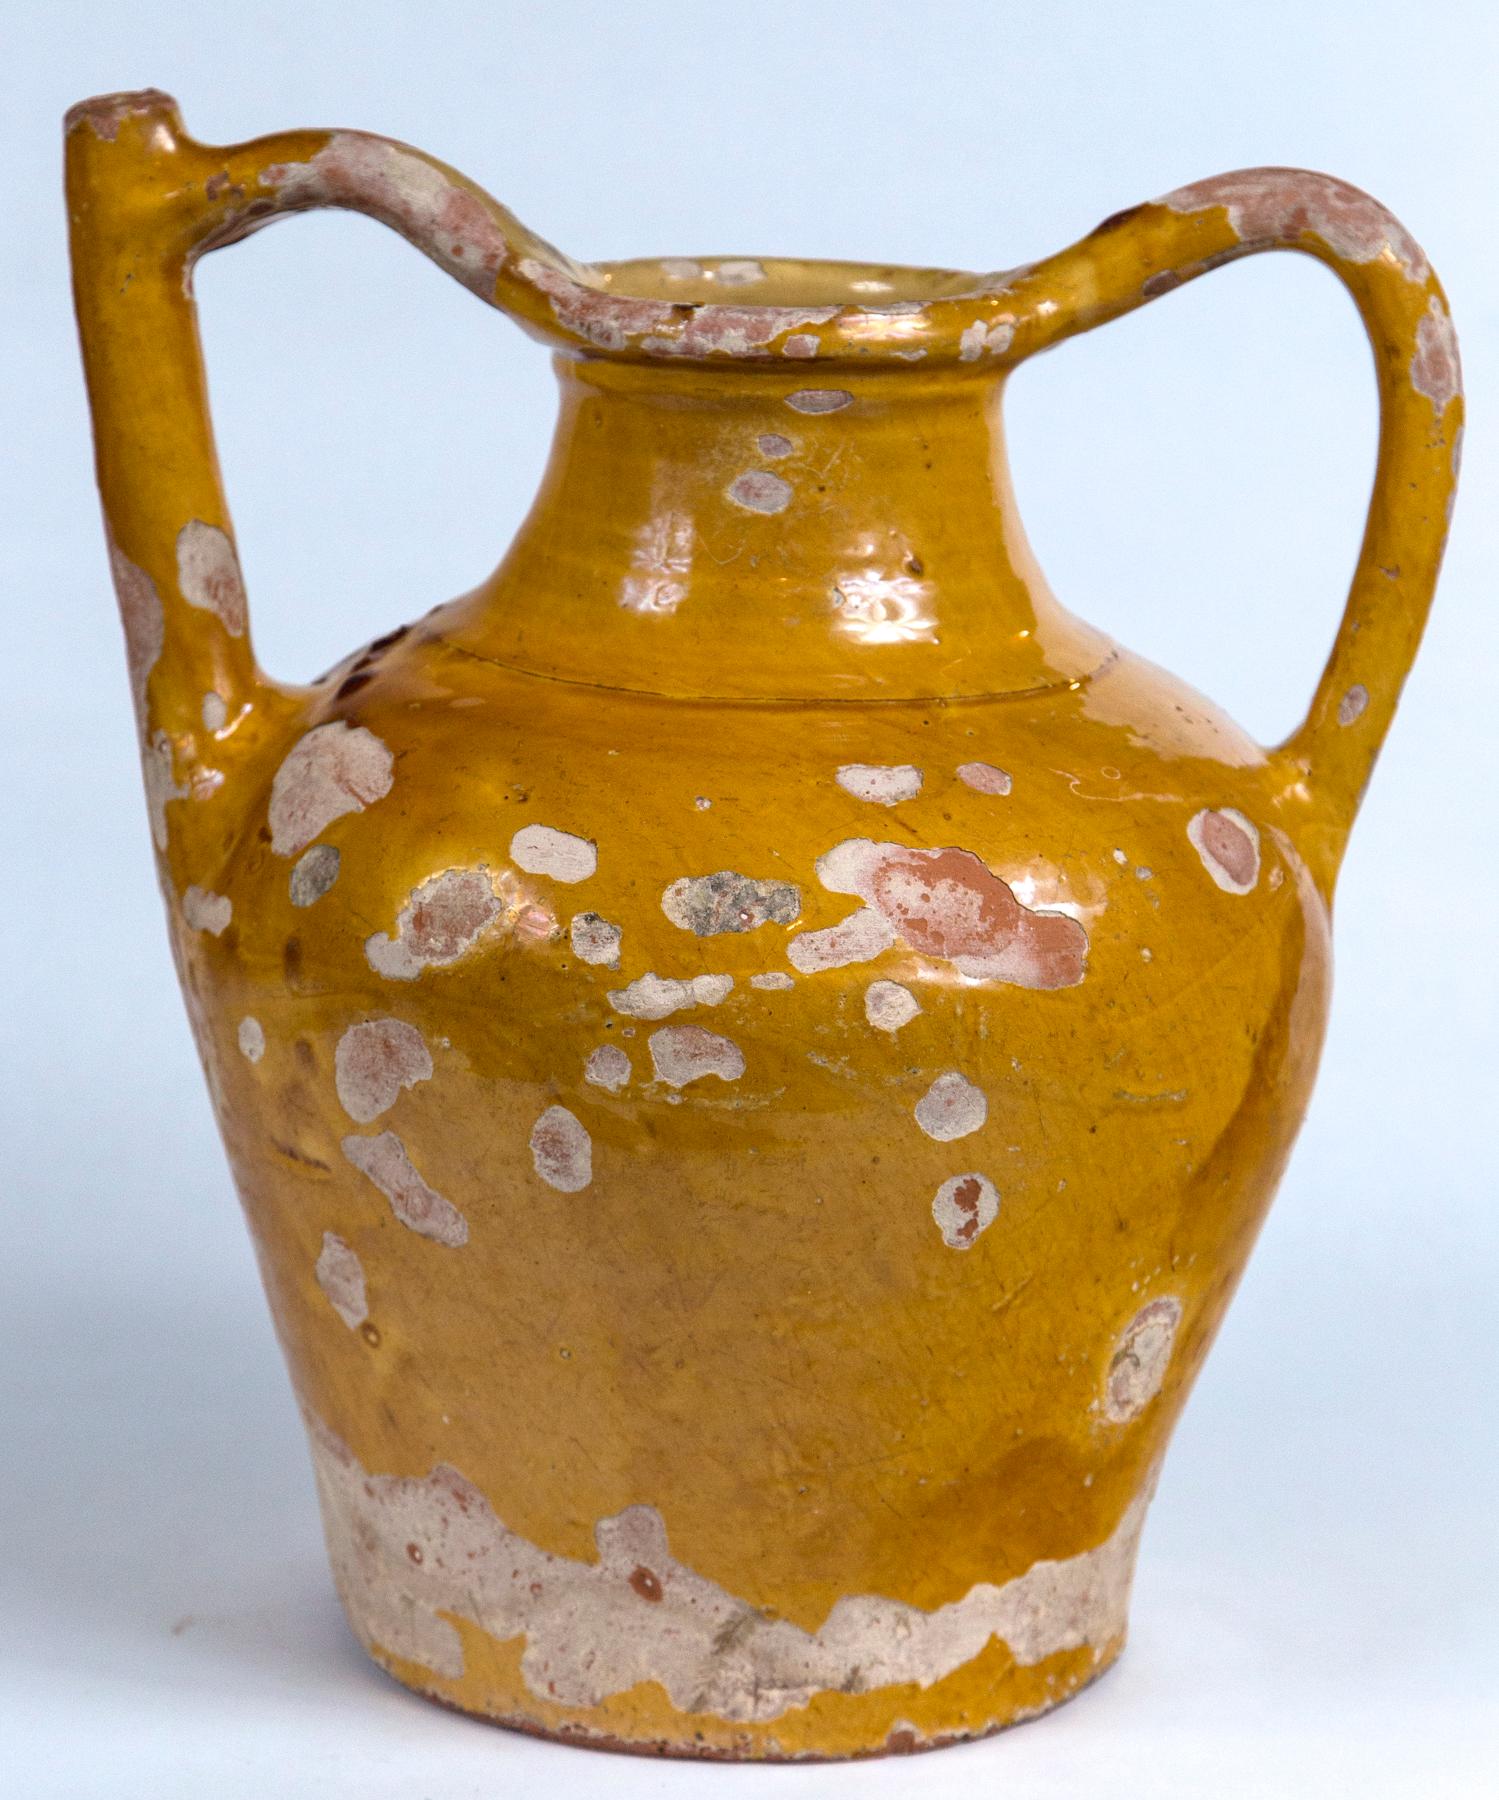 Gargoulette en terre cuite, 19e siècle. Une pièce de poterie magnifique et rare. Le modèle à double poignée était destiné à servir de l'eau à table. Glaçage traditionnel jaune moutarde à l'extérieur, glaçage jaune plus pâle à l'intérieur.